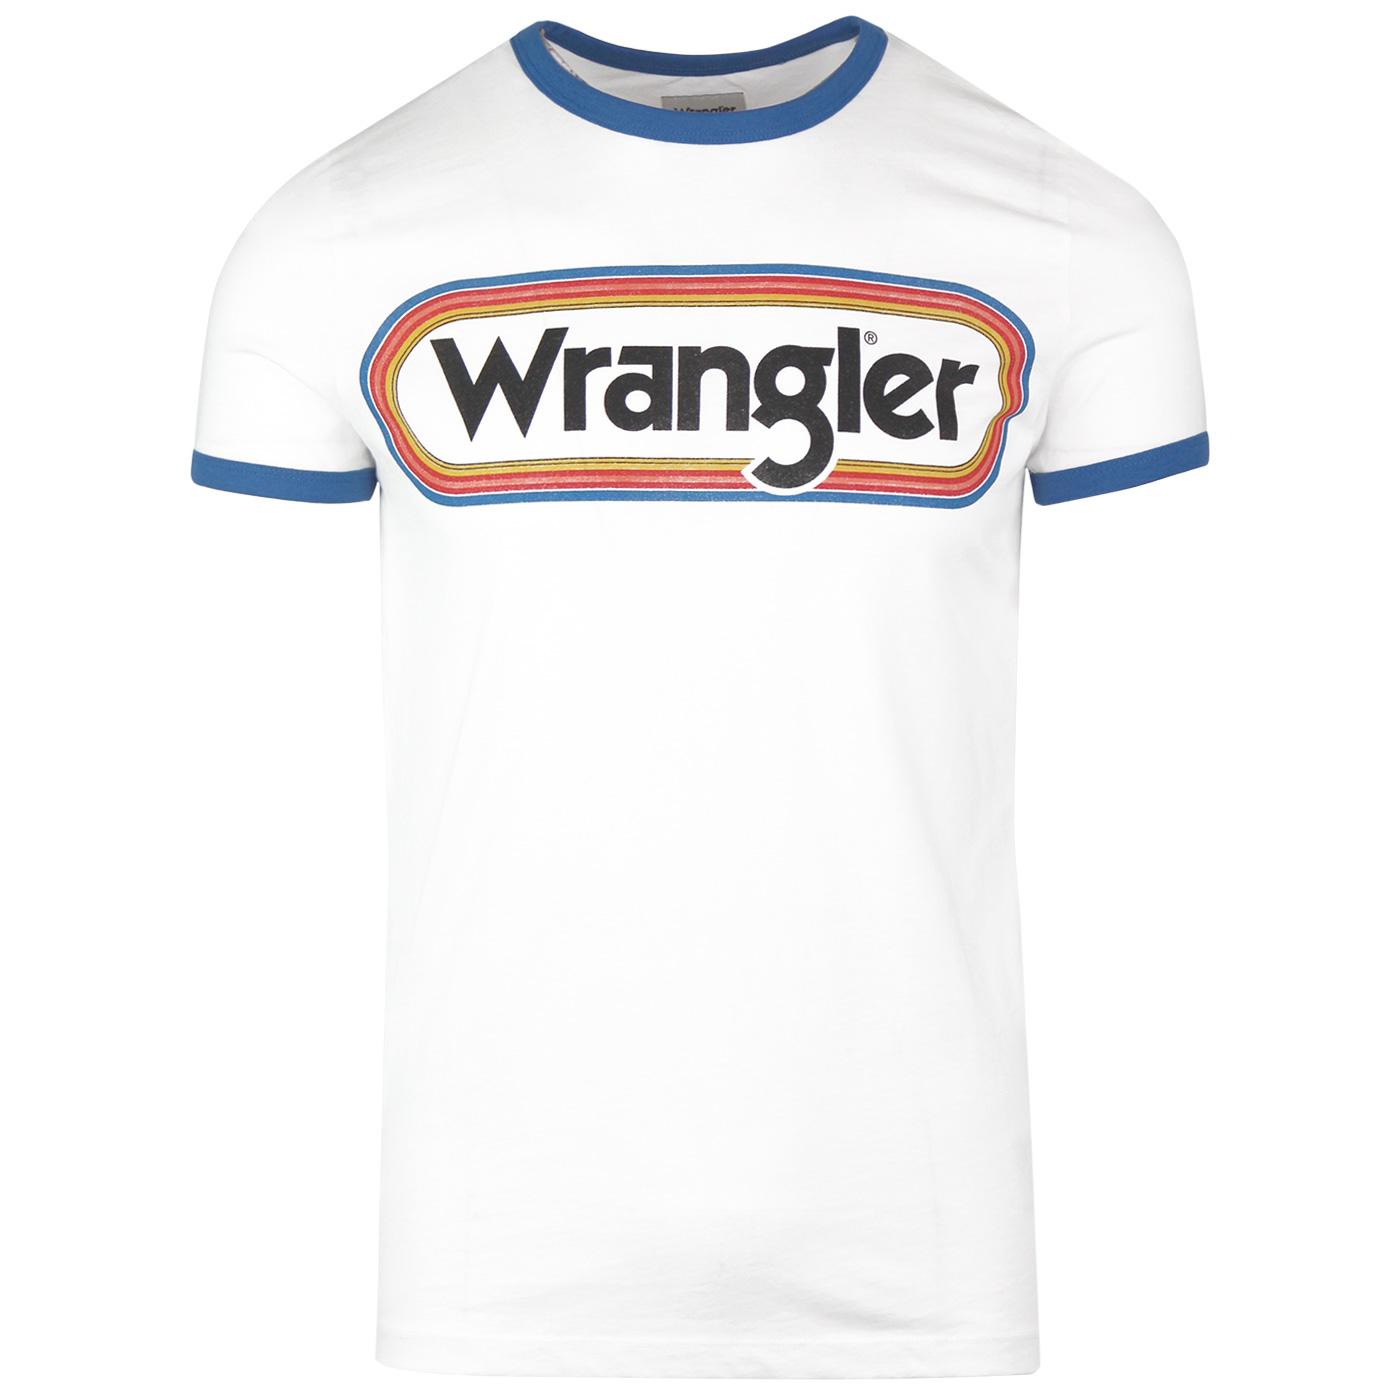 retro wrangler t shirt